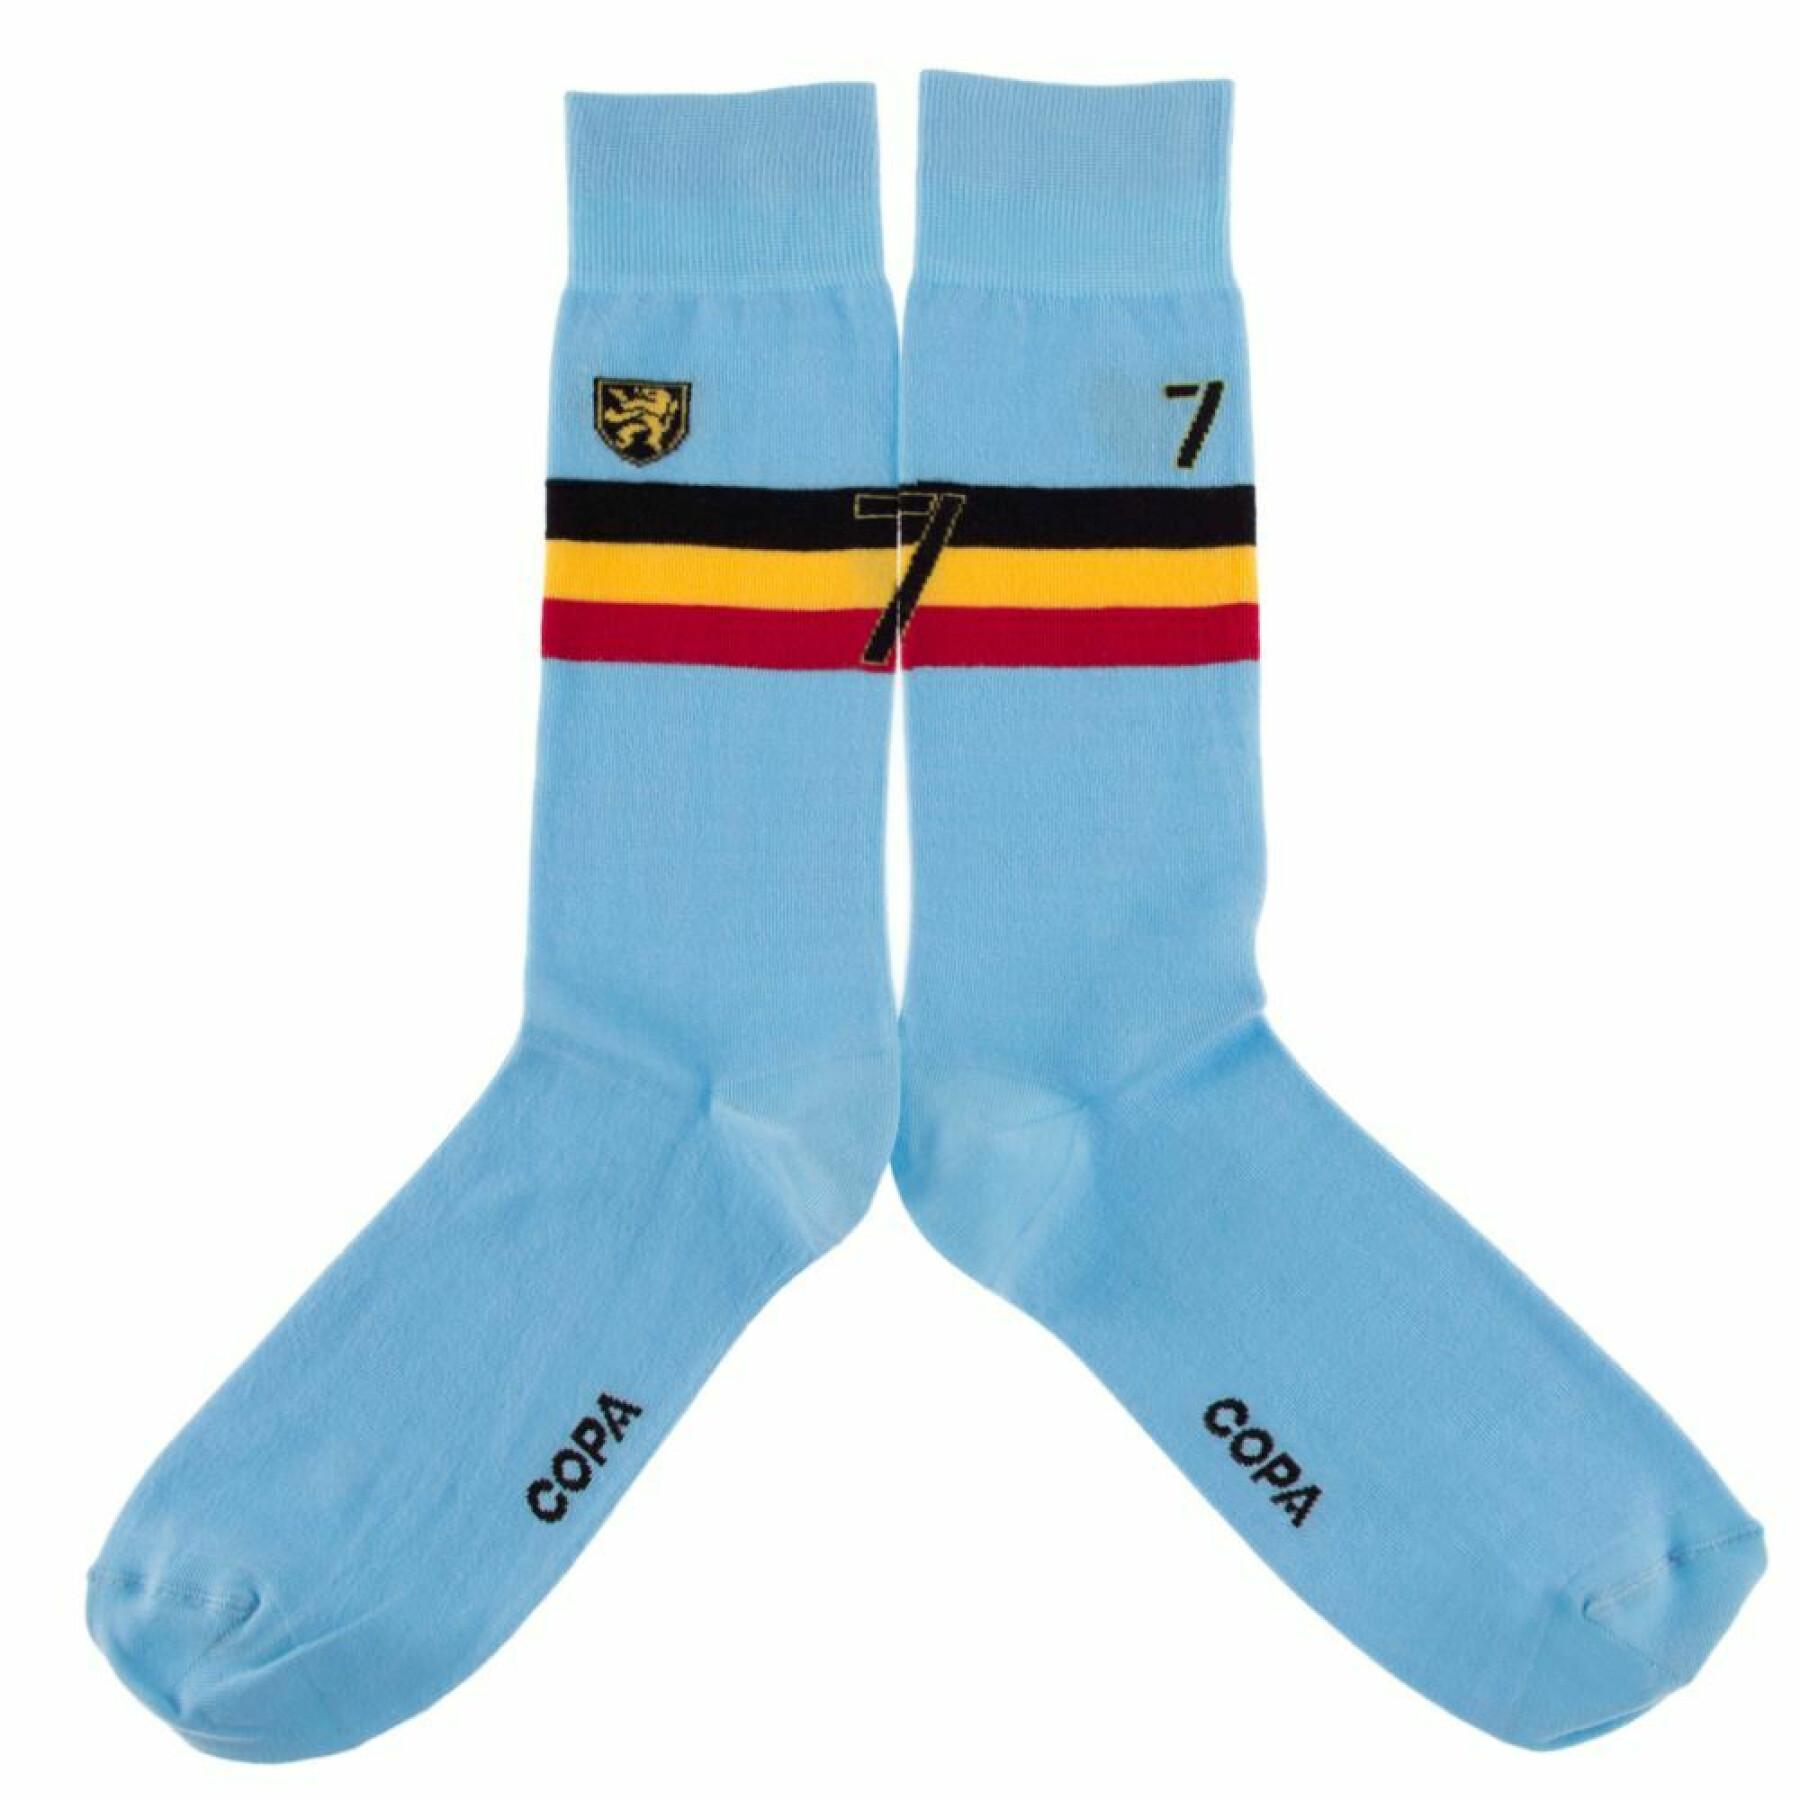 Socks Belgique 2016